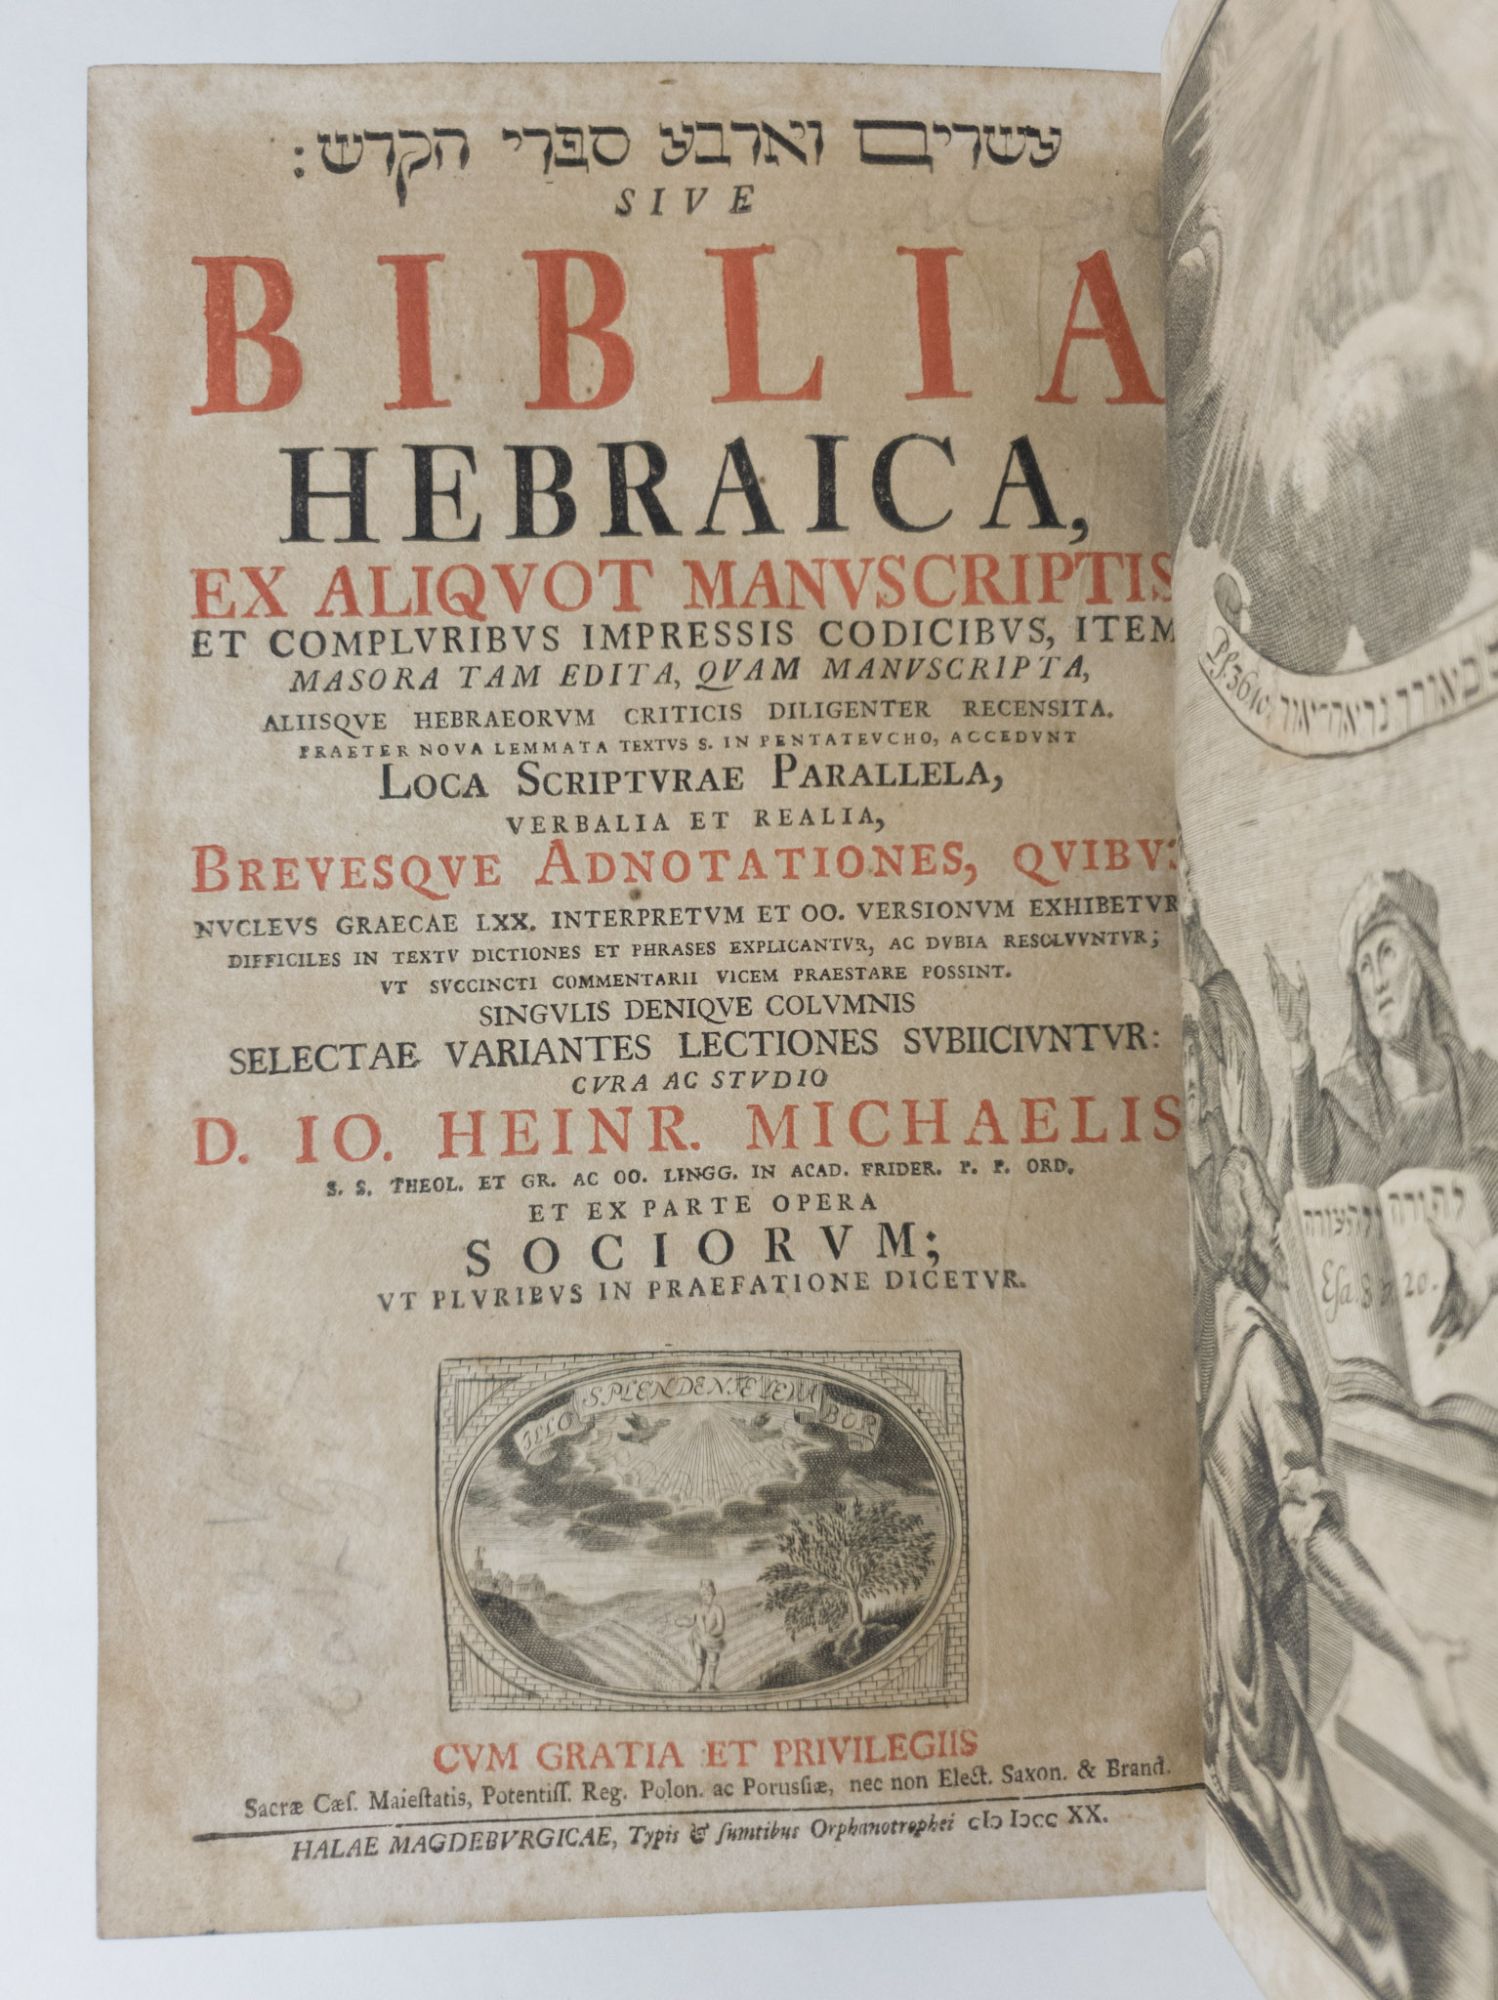 Product Image for BIBLIA HEBRAICA EX ALIQUOT MANUSCRIPTIS [Two Volumes]